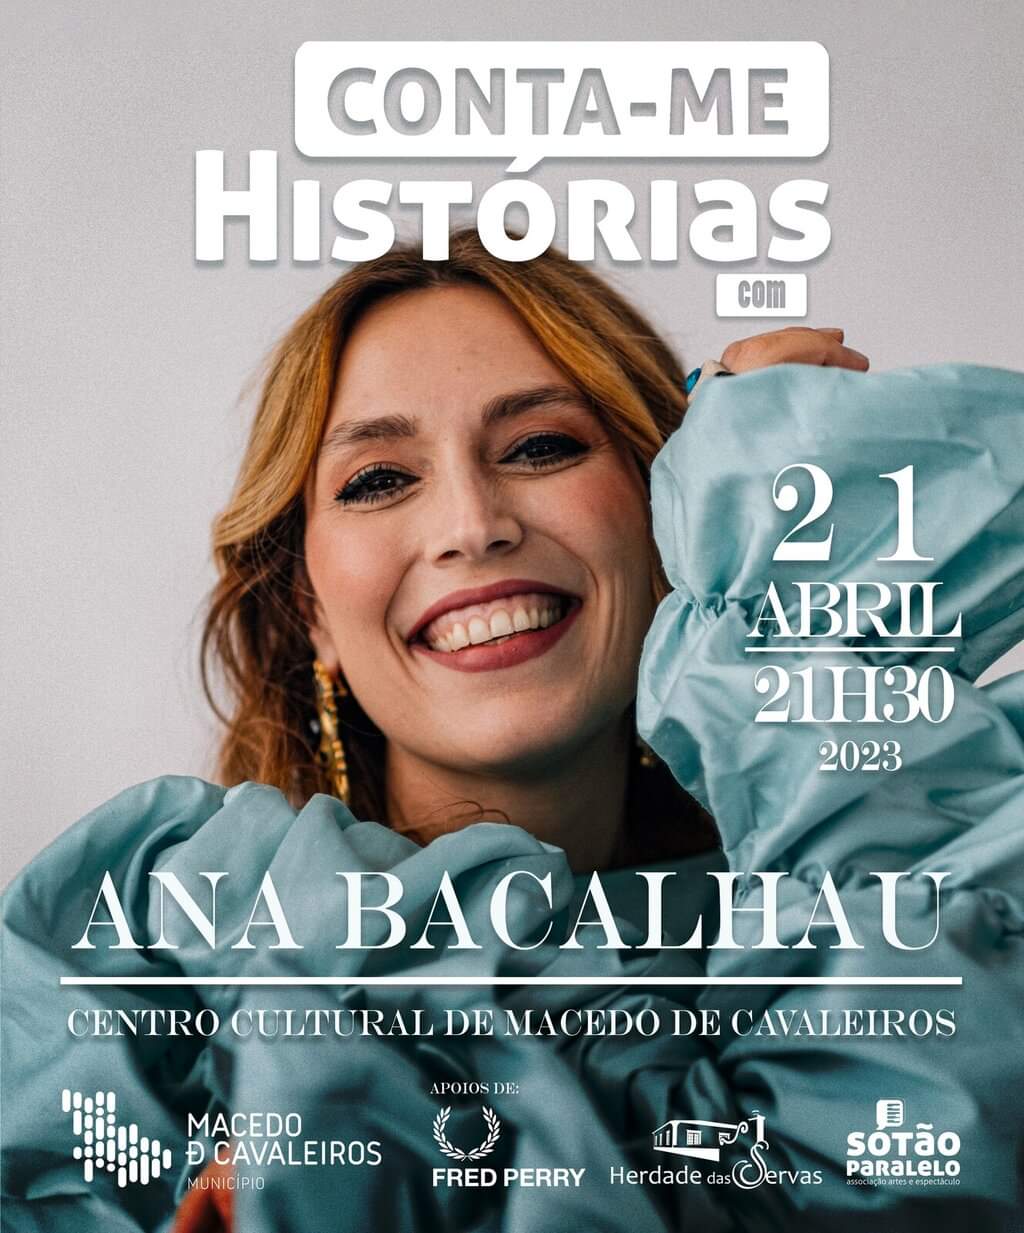 Ana Bacalhau vem esta sexta-feira a Macedo de Cavaleiros